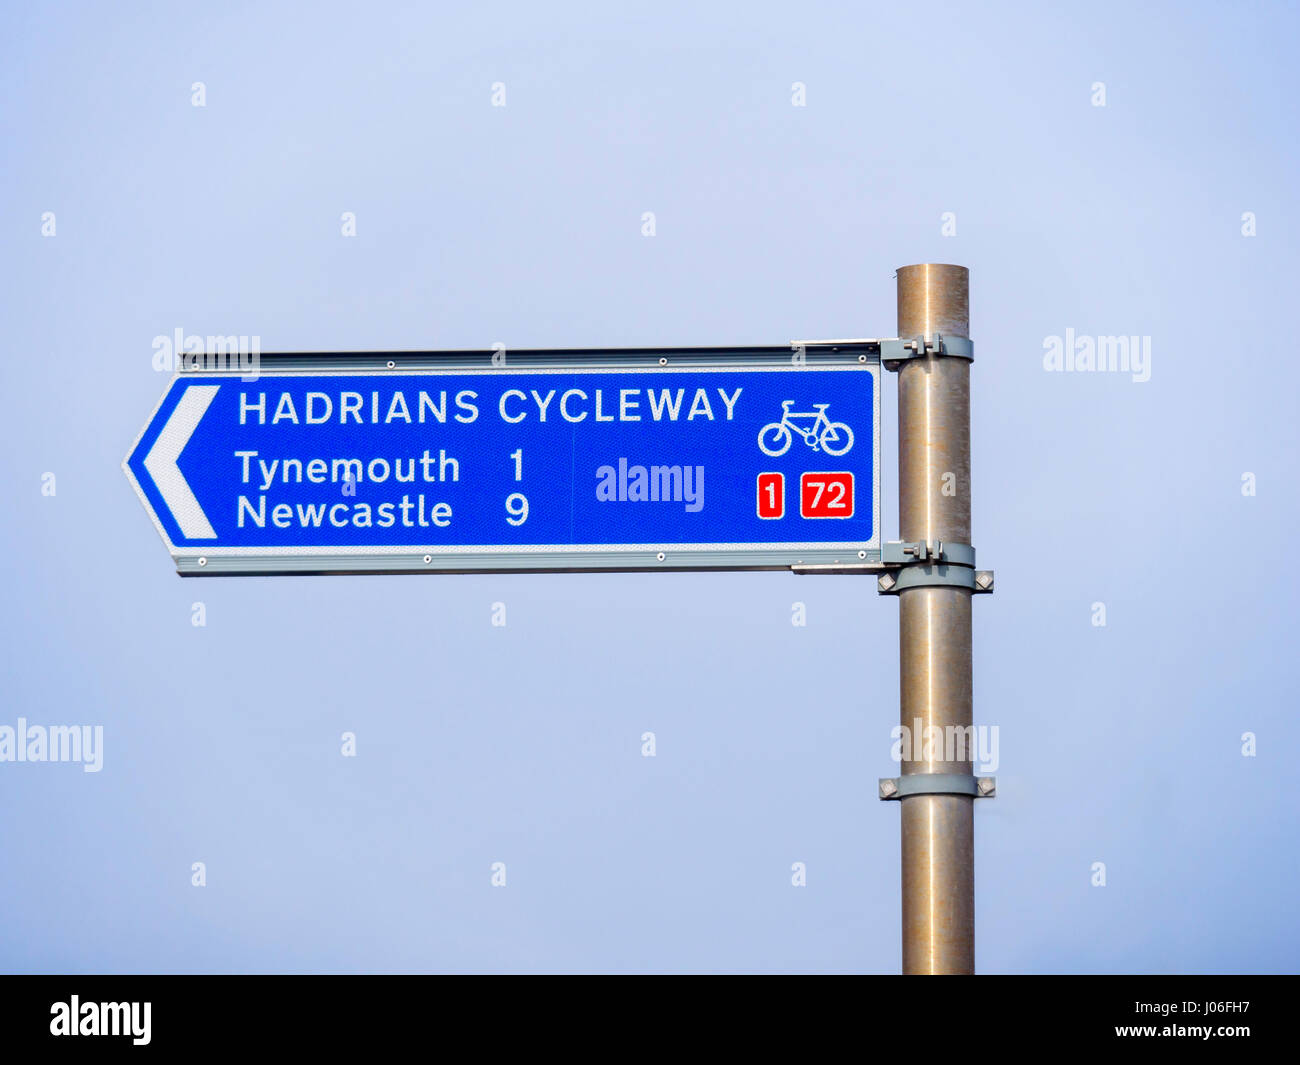 Wegweiser für die Hadrian-Radweg am Eingang zur Fähre von South Shields über den Fluss Tyne, Routen 1 und 72 Tynemouth und Newcastle Stockfoto